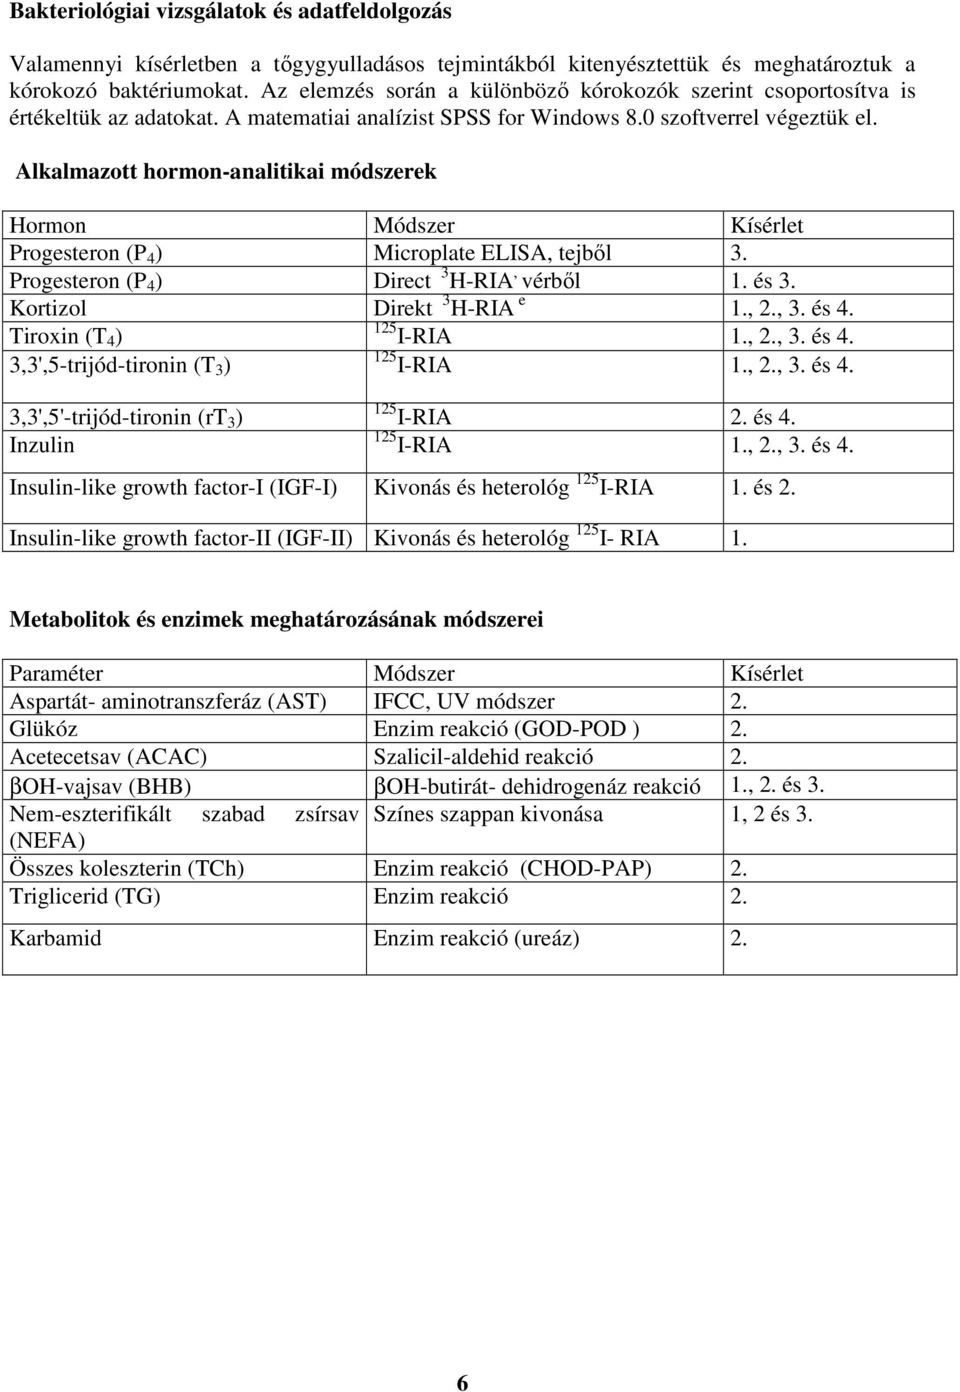 Alkalmazott hormon-analitikai módszerek Hormon Módszer Kísérlet Progesteron (P 4 ) Microplate ELISA, tejbıl 3. Progesteron (P 4 ) Direct 3 H-RIA, vérbıl 1. és 3. Kortizol Direkt 3 H-RIA e 1., 2., 3.